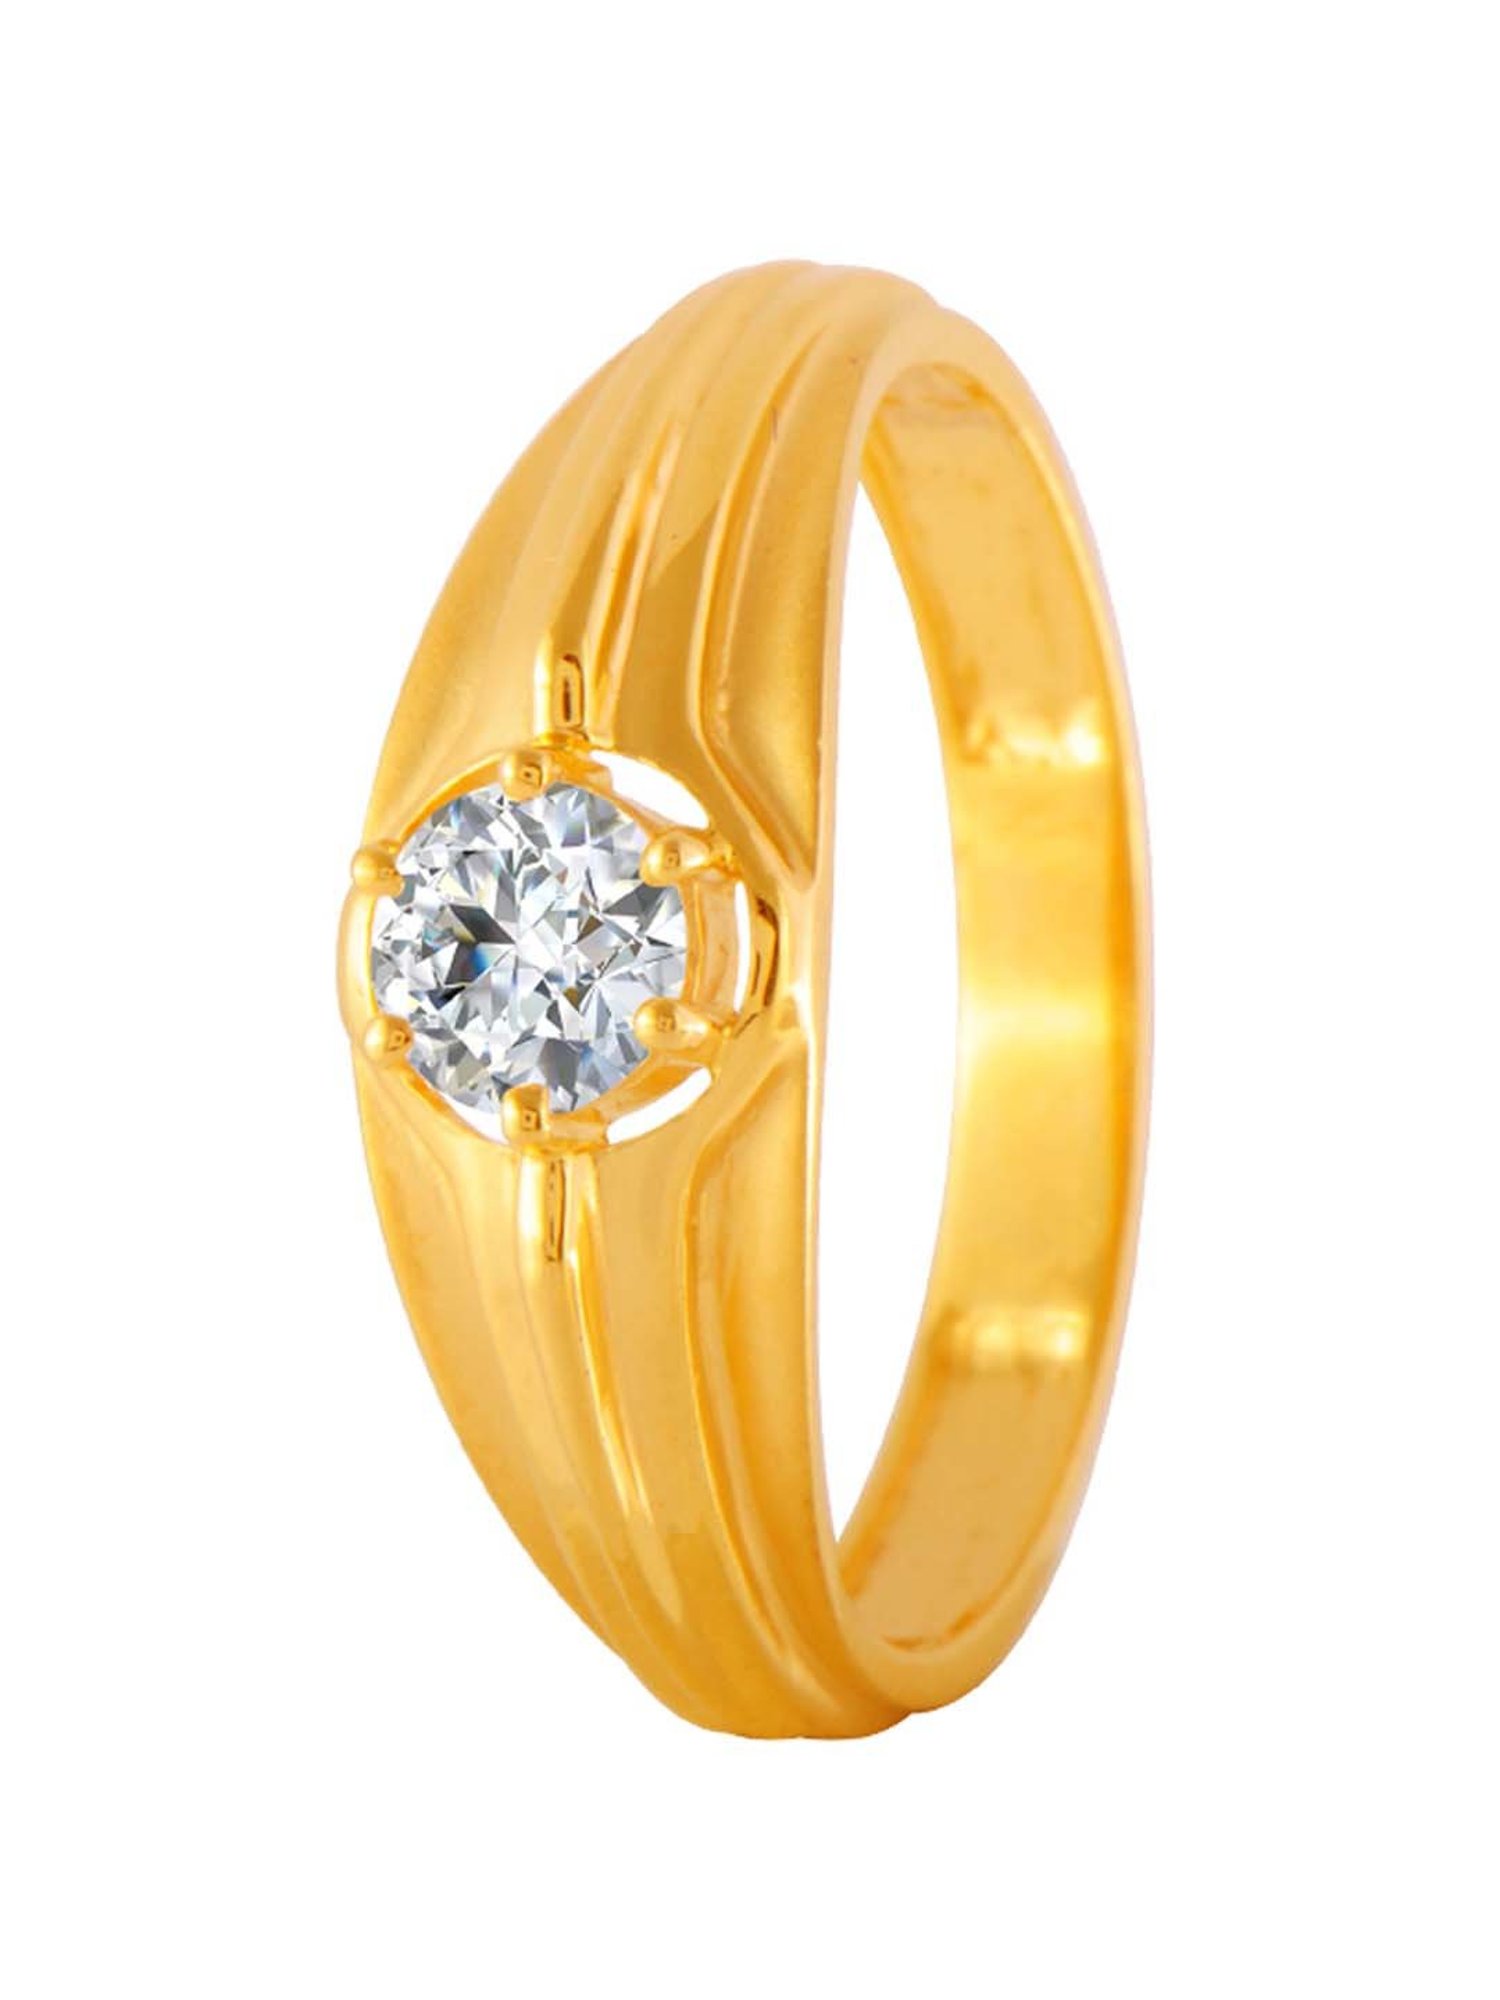 Gold Finger Ring Designs Online for Women -?PC Chandra